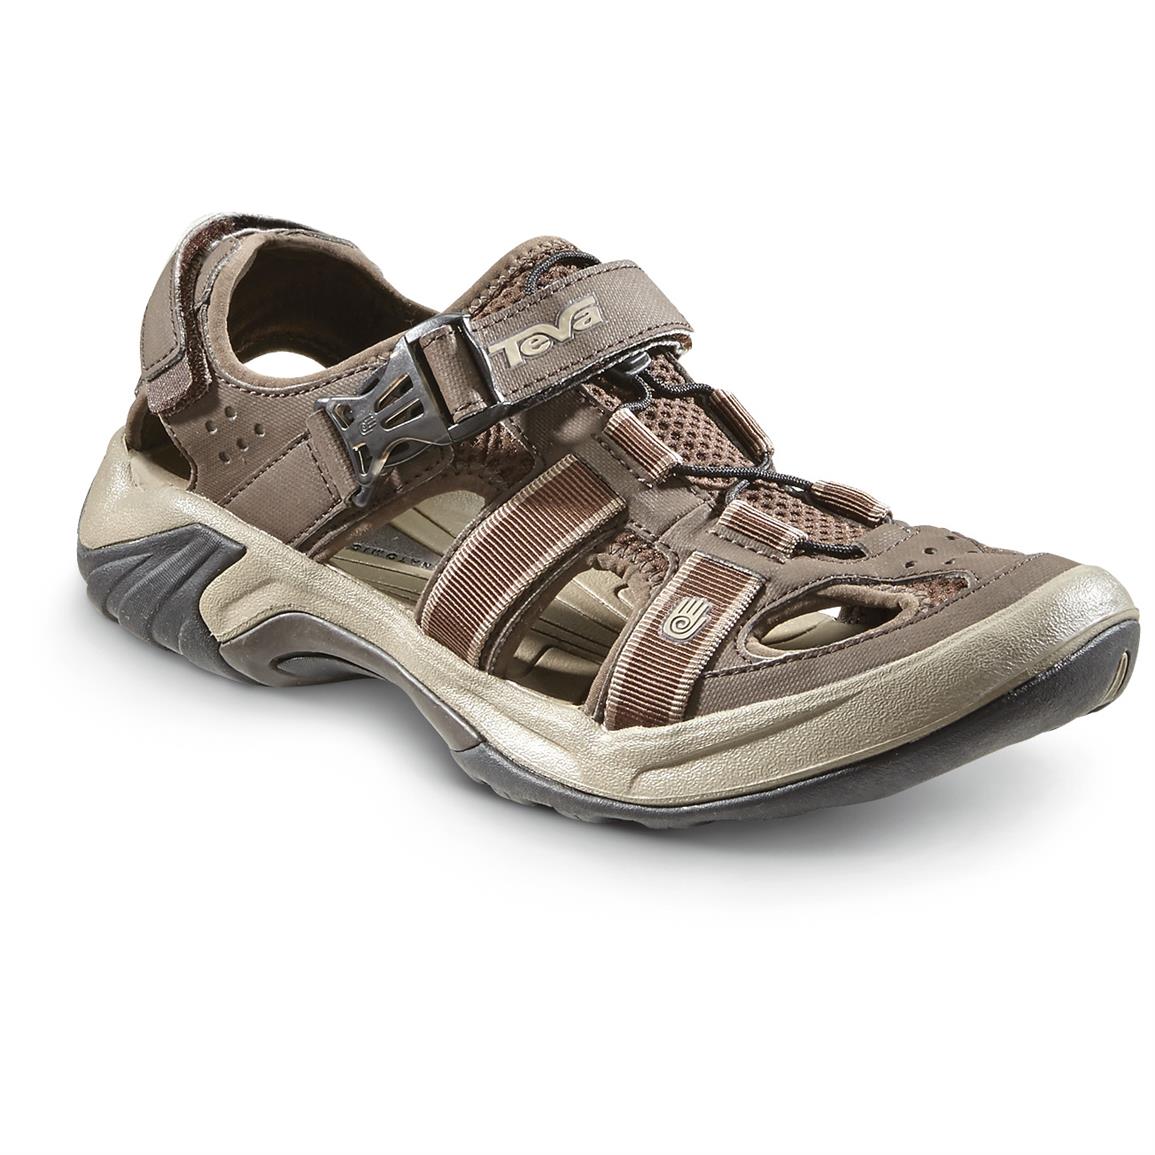 Teva Men's Omnium Sport Sandals, Turkish Coffee - 656502, Sandals at